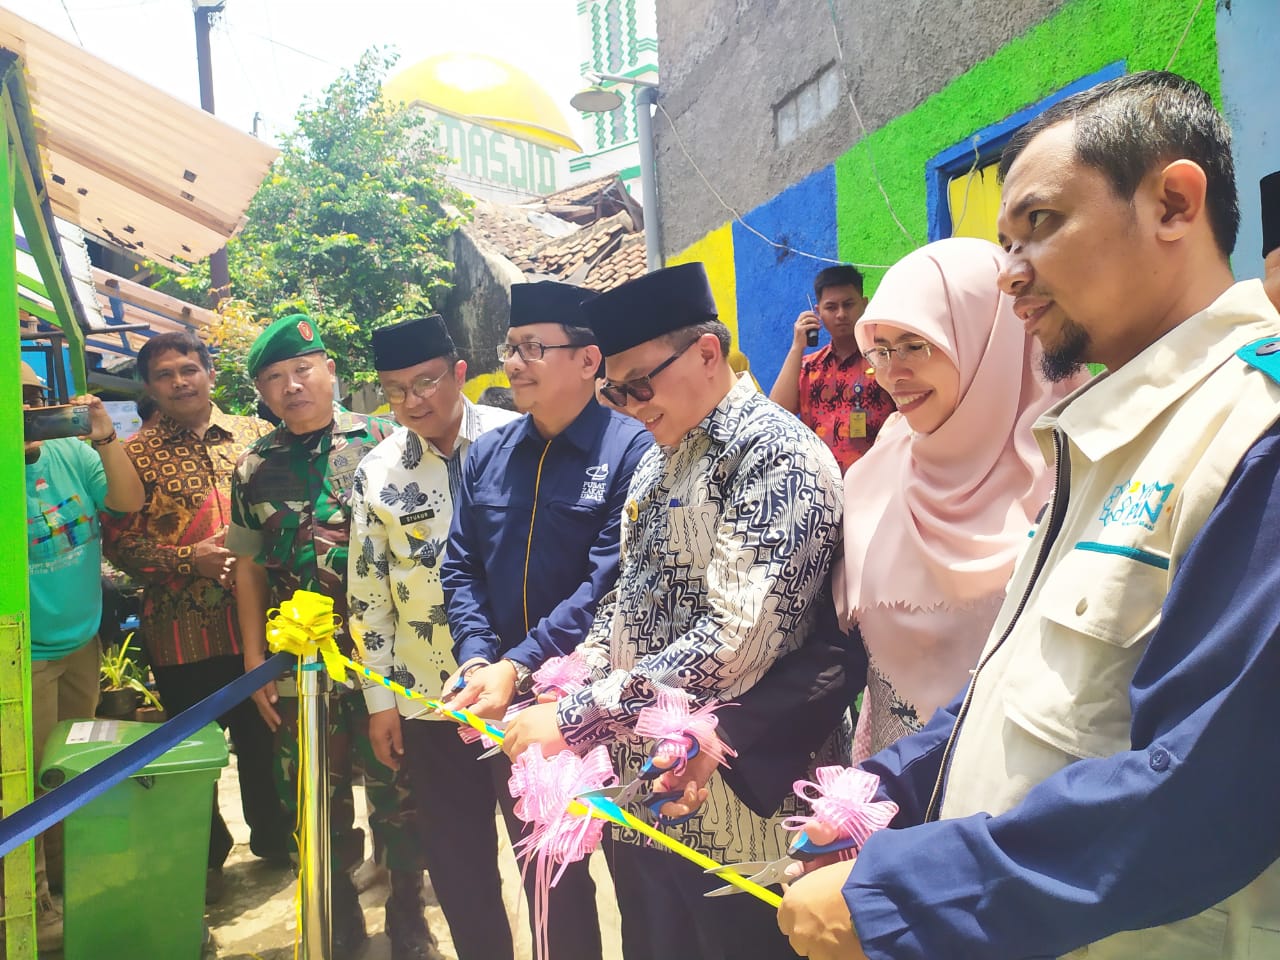 Walikota Bandung, Pusat Zakat Umat (PZU) dan YBM PLN Kolaborasi Resmikan Bedah Rumah